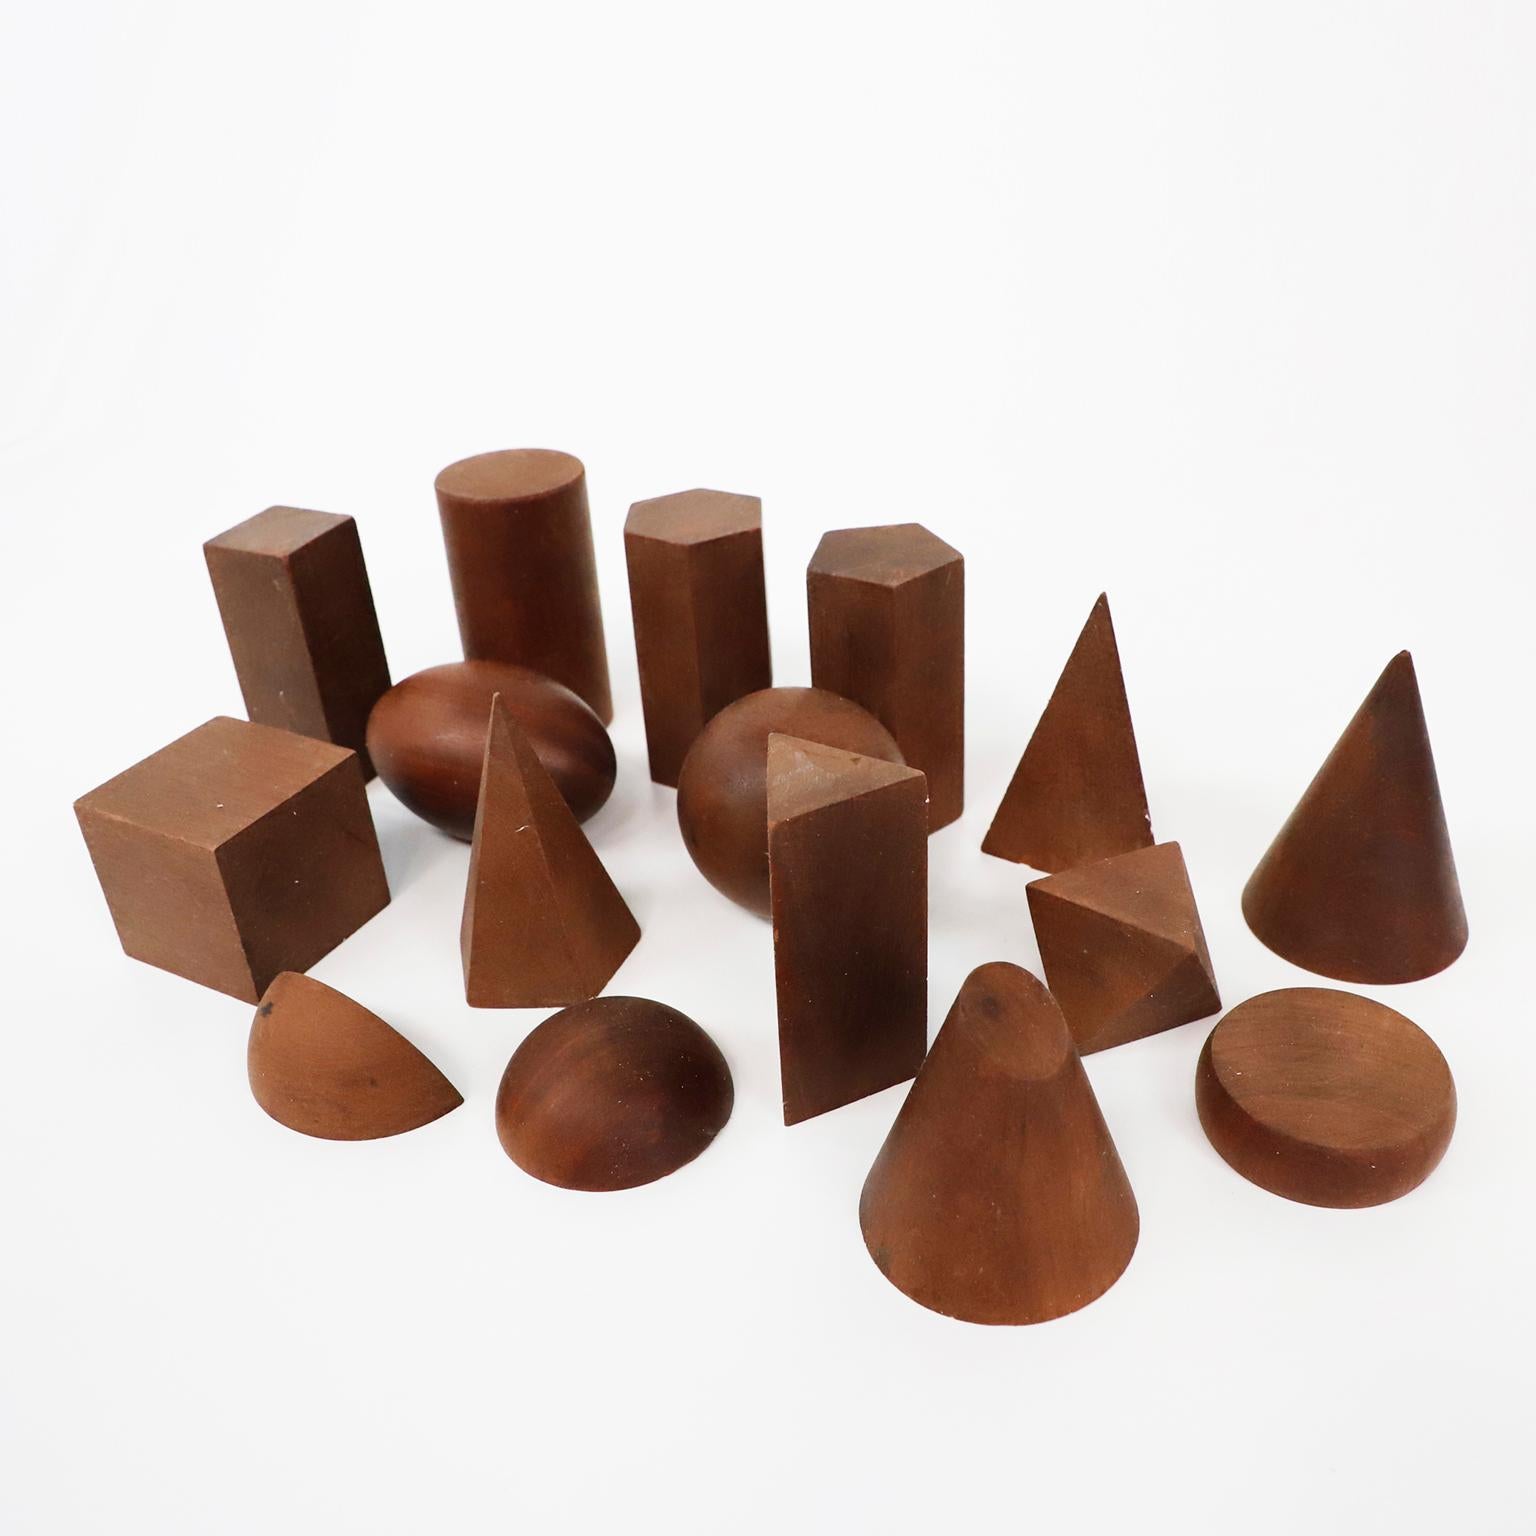 Circa 1940. Nous vous proposons ce lot de 16 formes géométriques vintage en bois. Ces modèles en bois étaient utilisés pour enseigner la géométrie solide et les mathématiques.